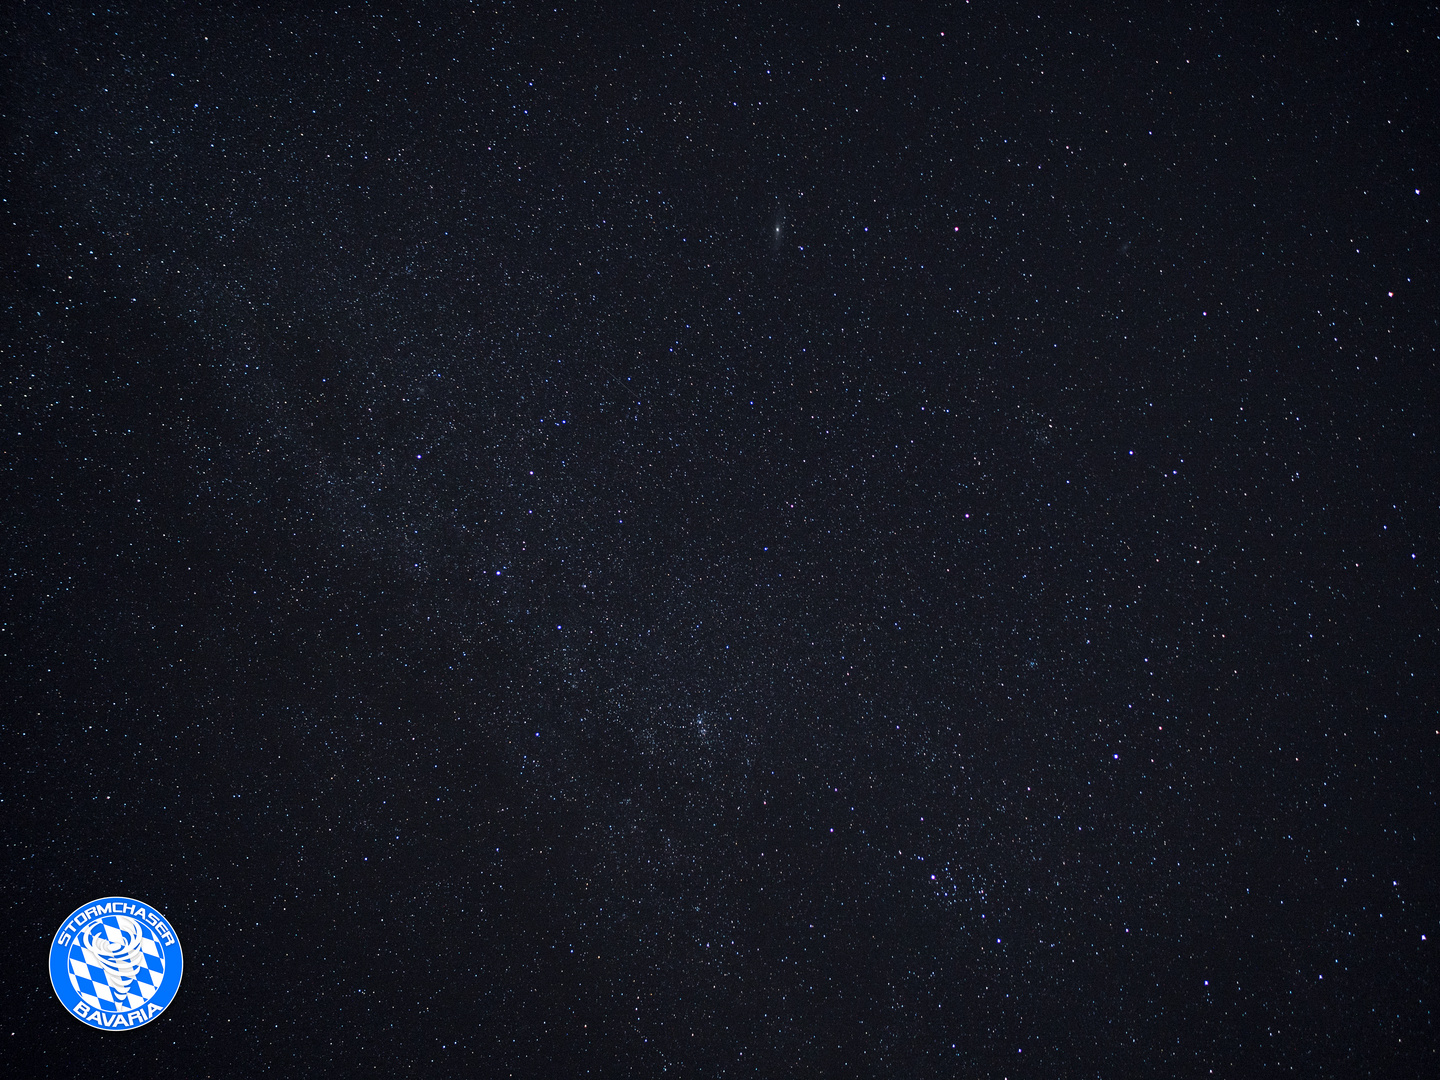 Sternschnuppe in der Milchstraße versteckt + Andromedagalaxie